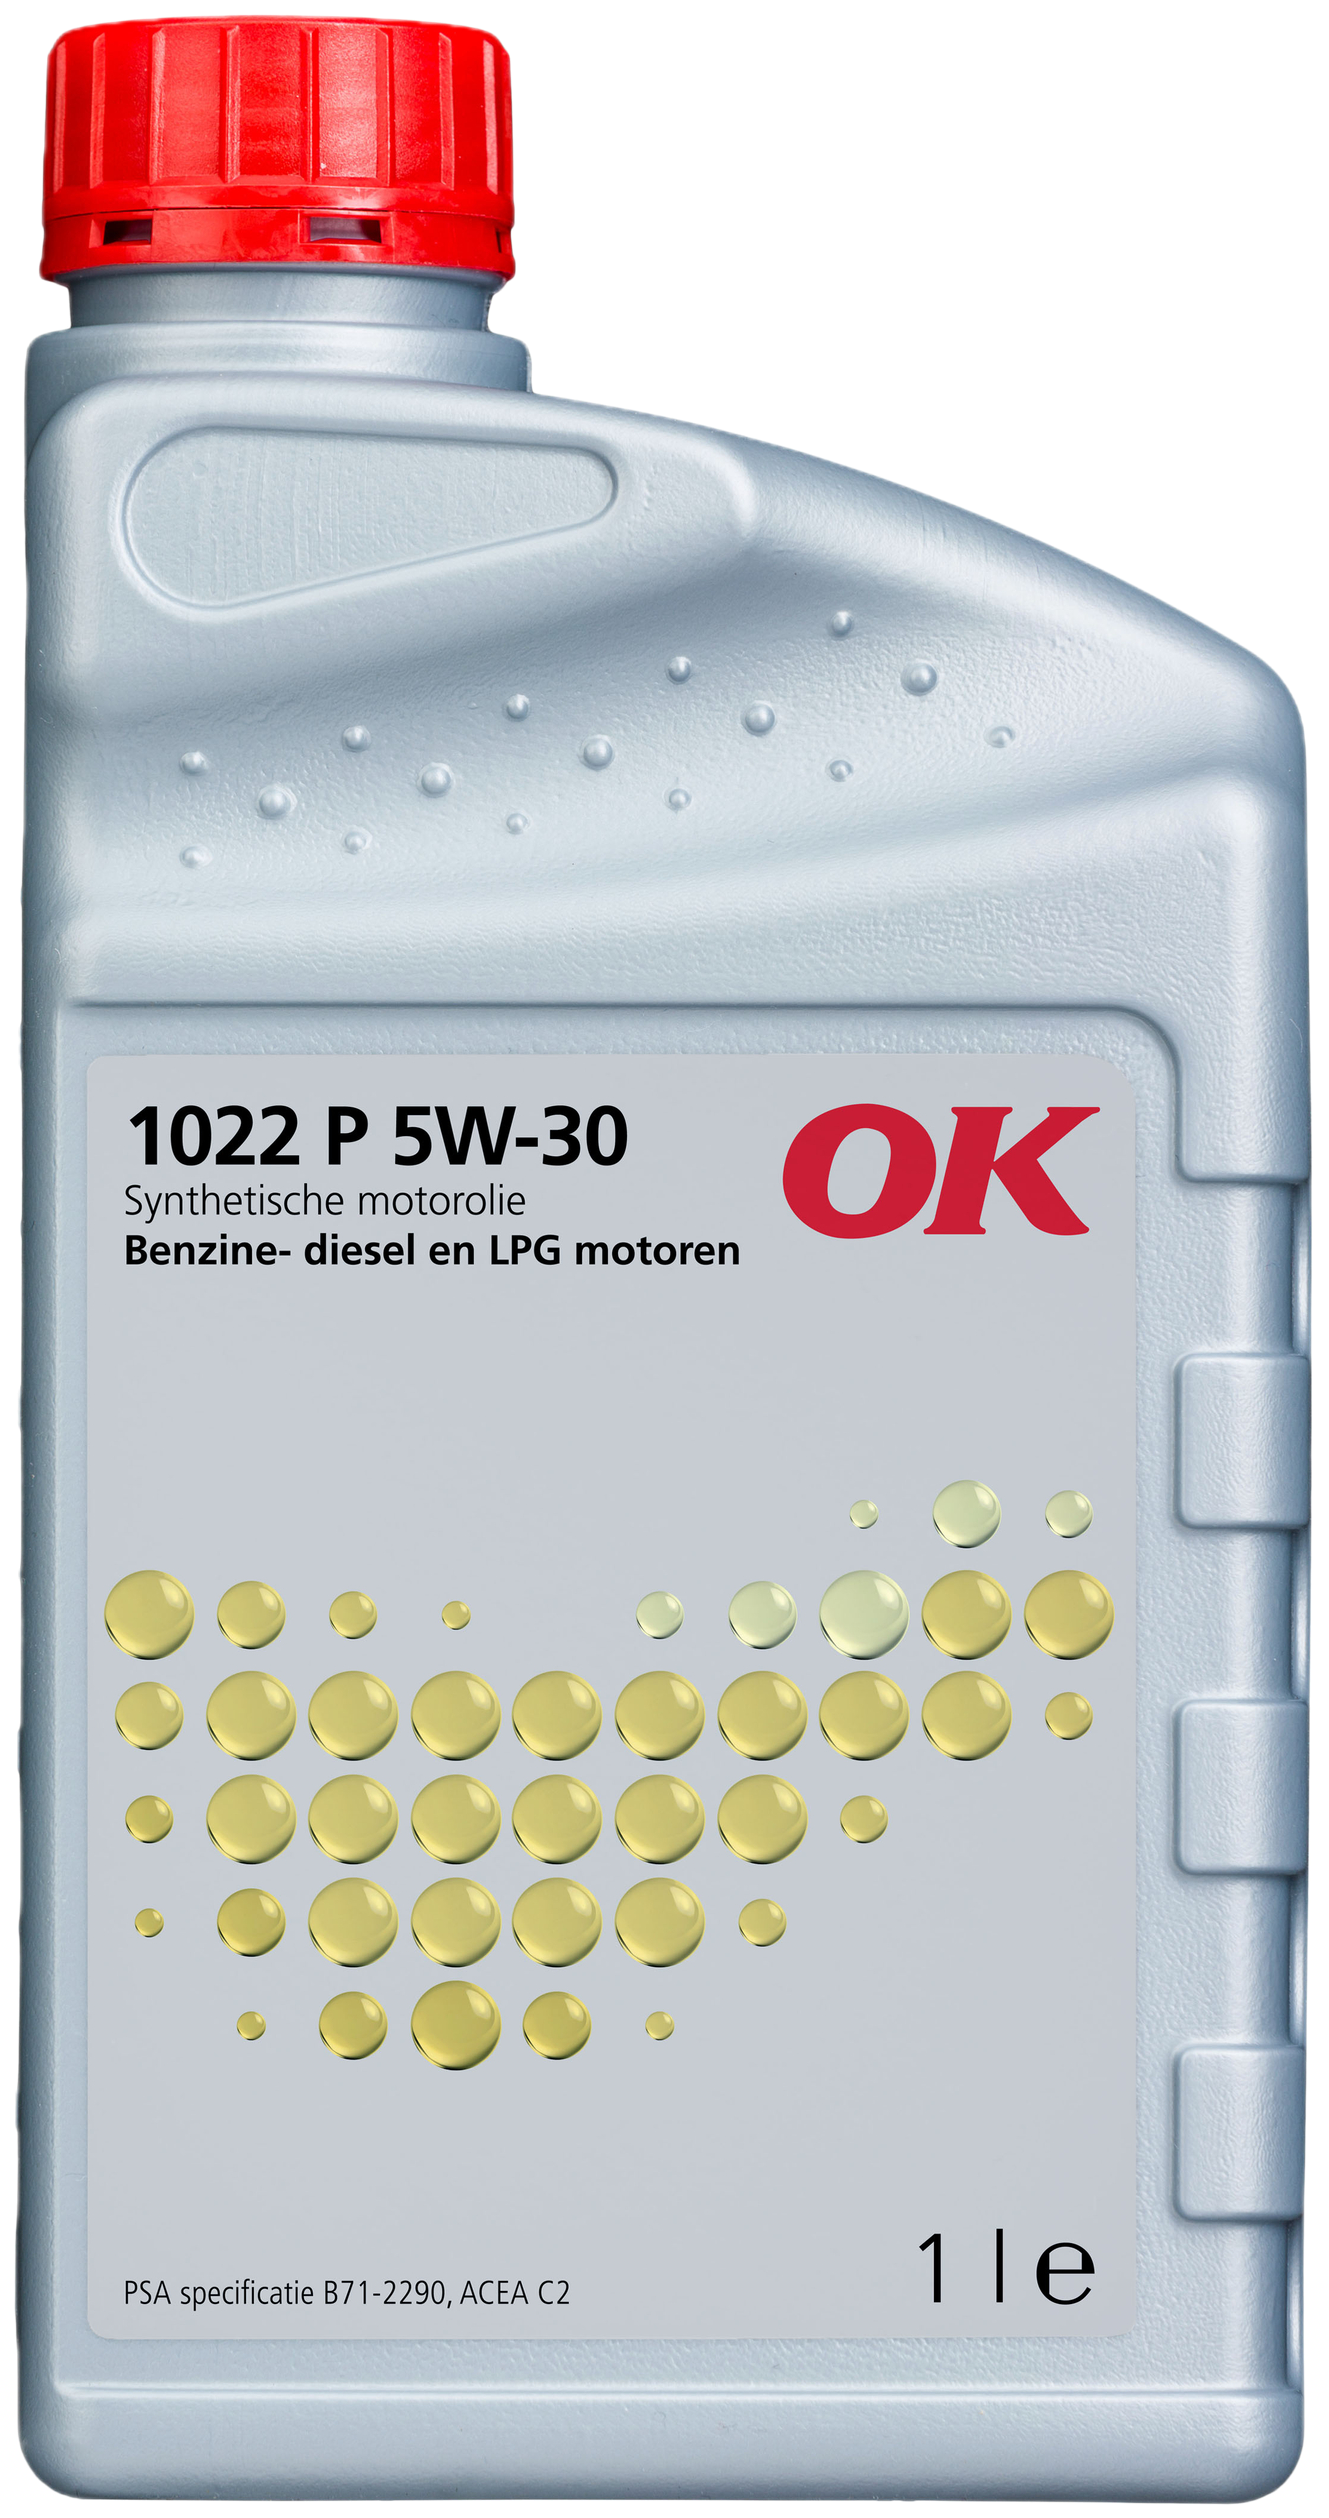 O2022-1 OK 1022 P 5W-30 is een brandstofbesparende motorolie, ontwikkeld en geproduceerd volgens de modernste technologieën en gebaseerd op synthetische basisoliën.